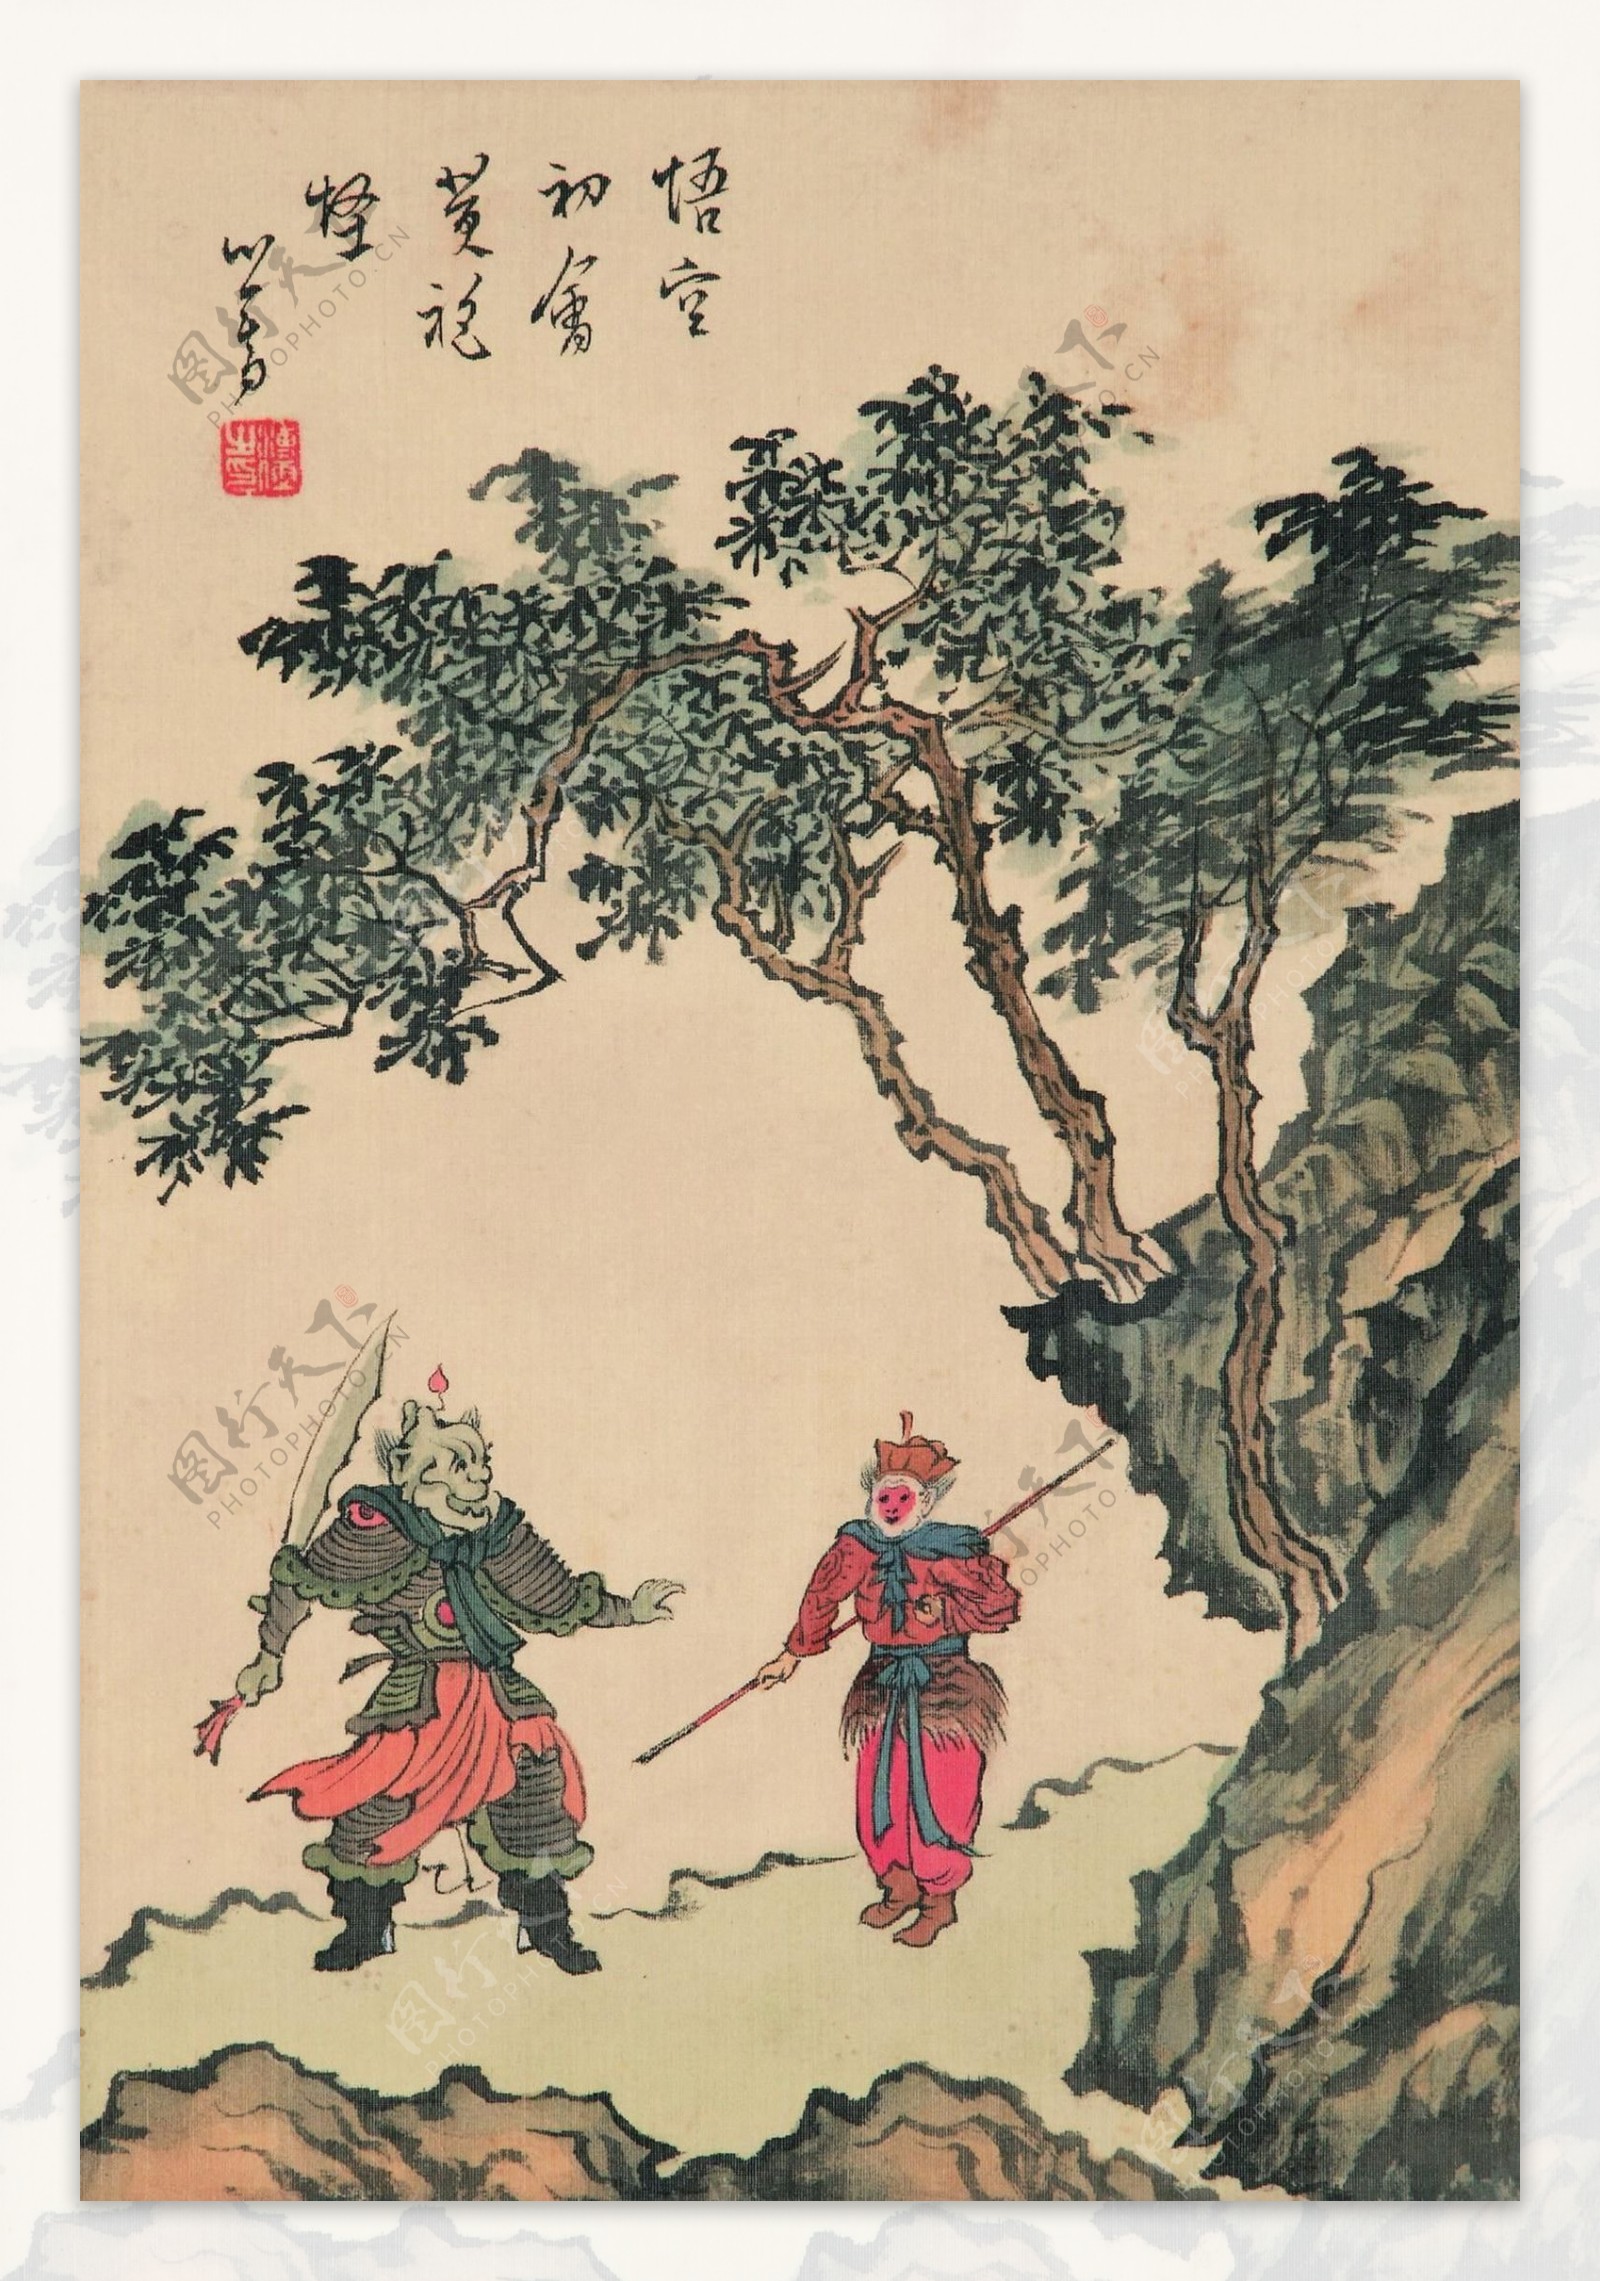 北京保利古董珍玩网拍第一回：晚清御窑与慈禧太后的神秘花园